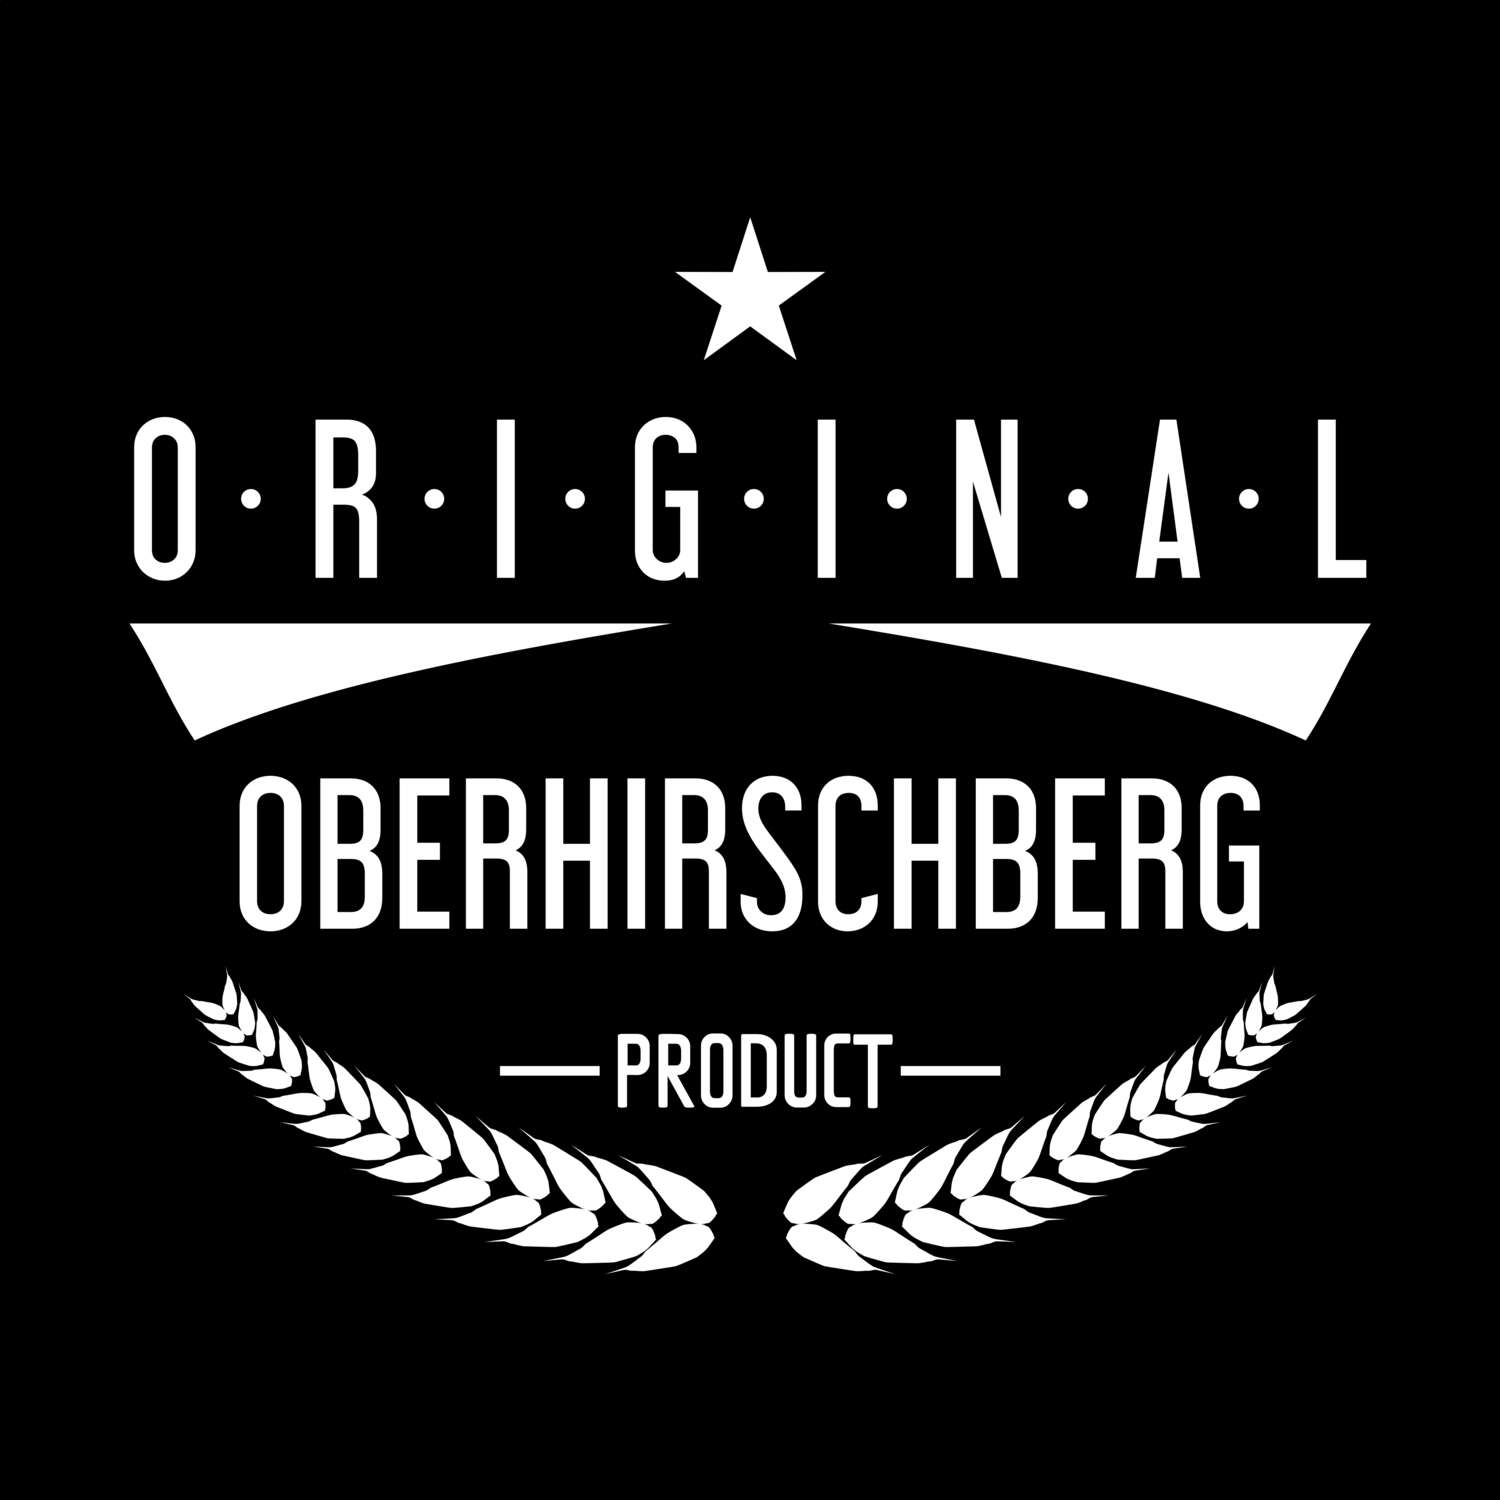 Oberhirschberg T-Shirt »Original Product«